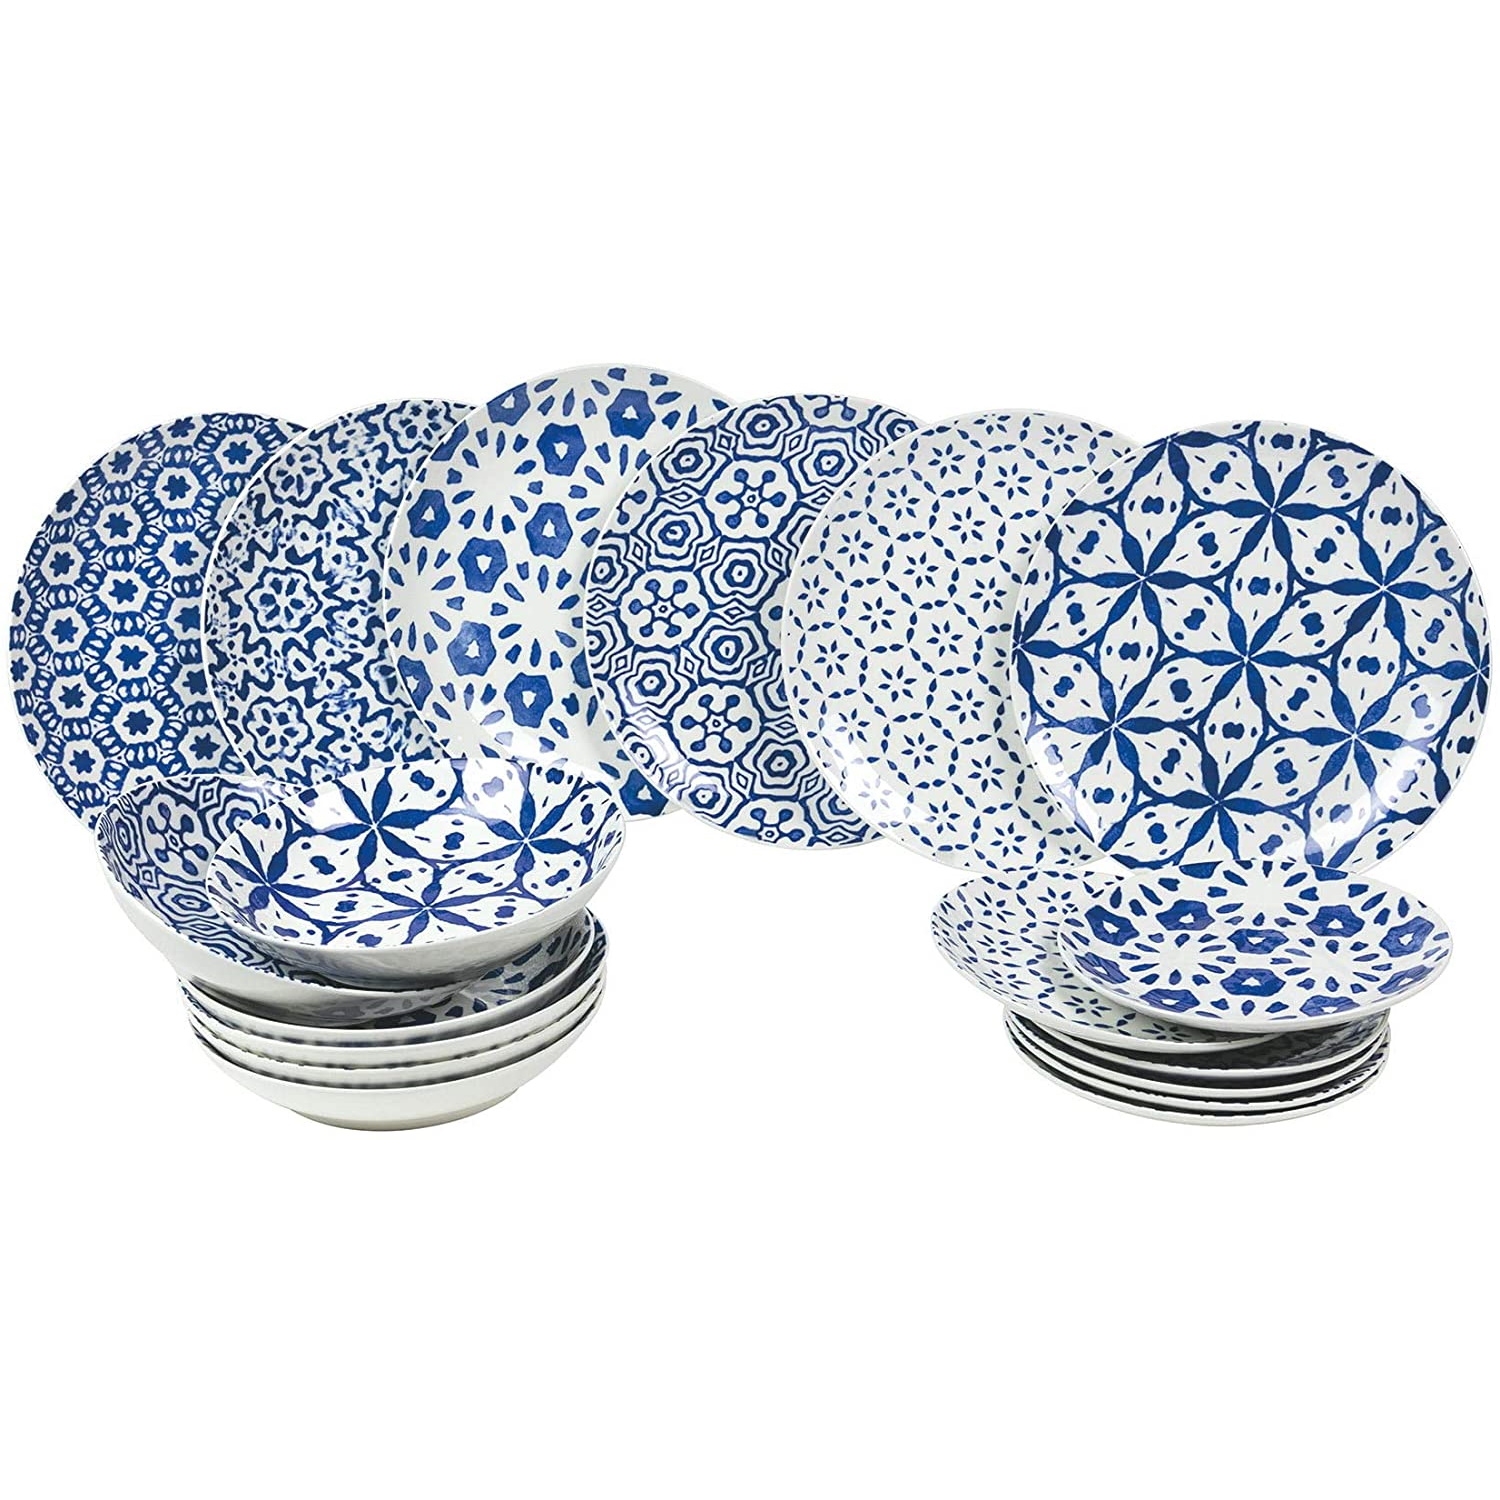 Ceramica turchese - tutto in un umidificatore, diffusore di olio e